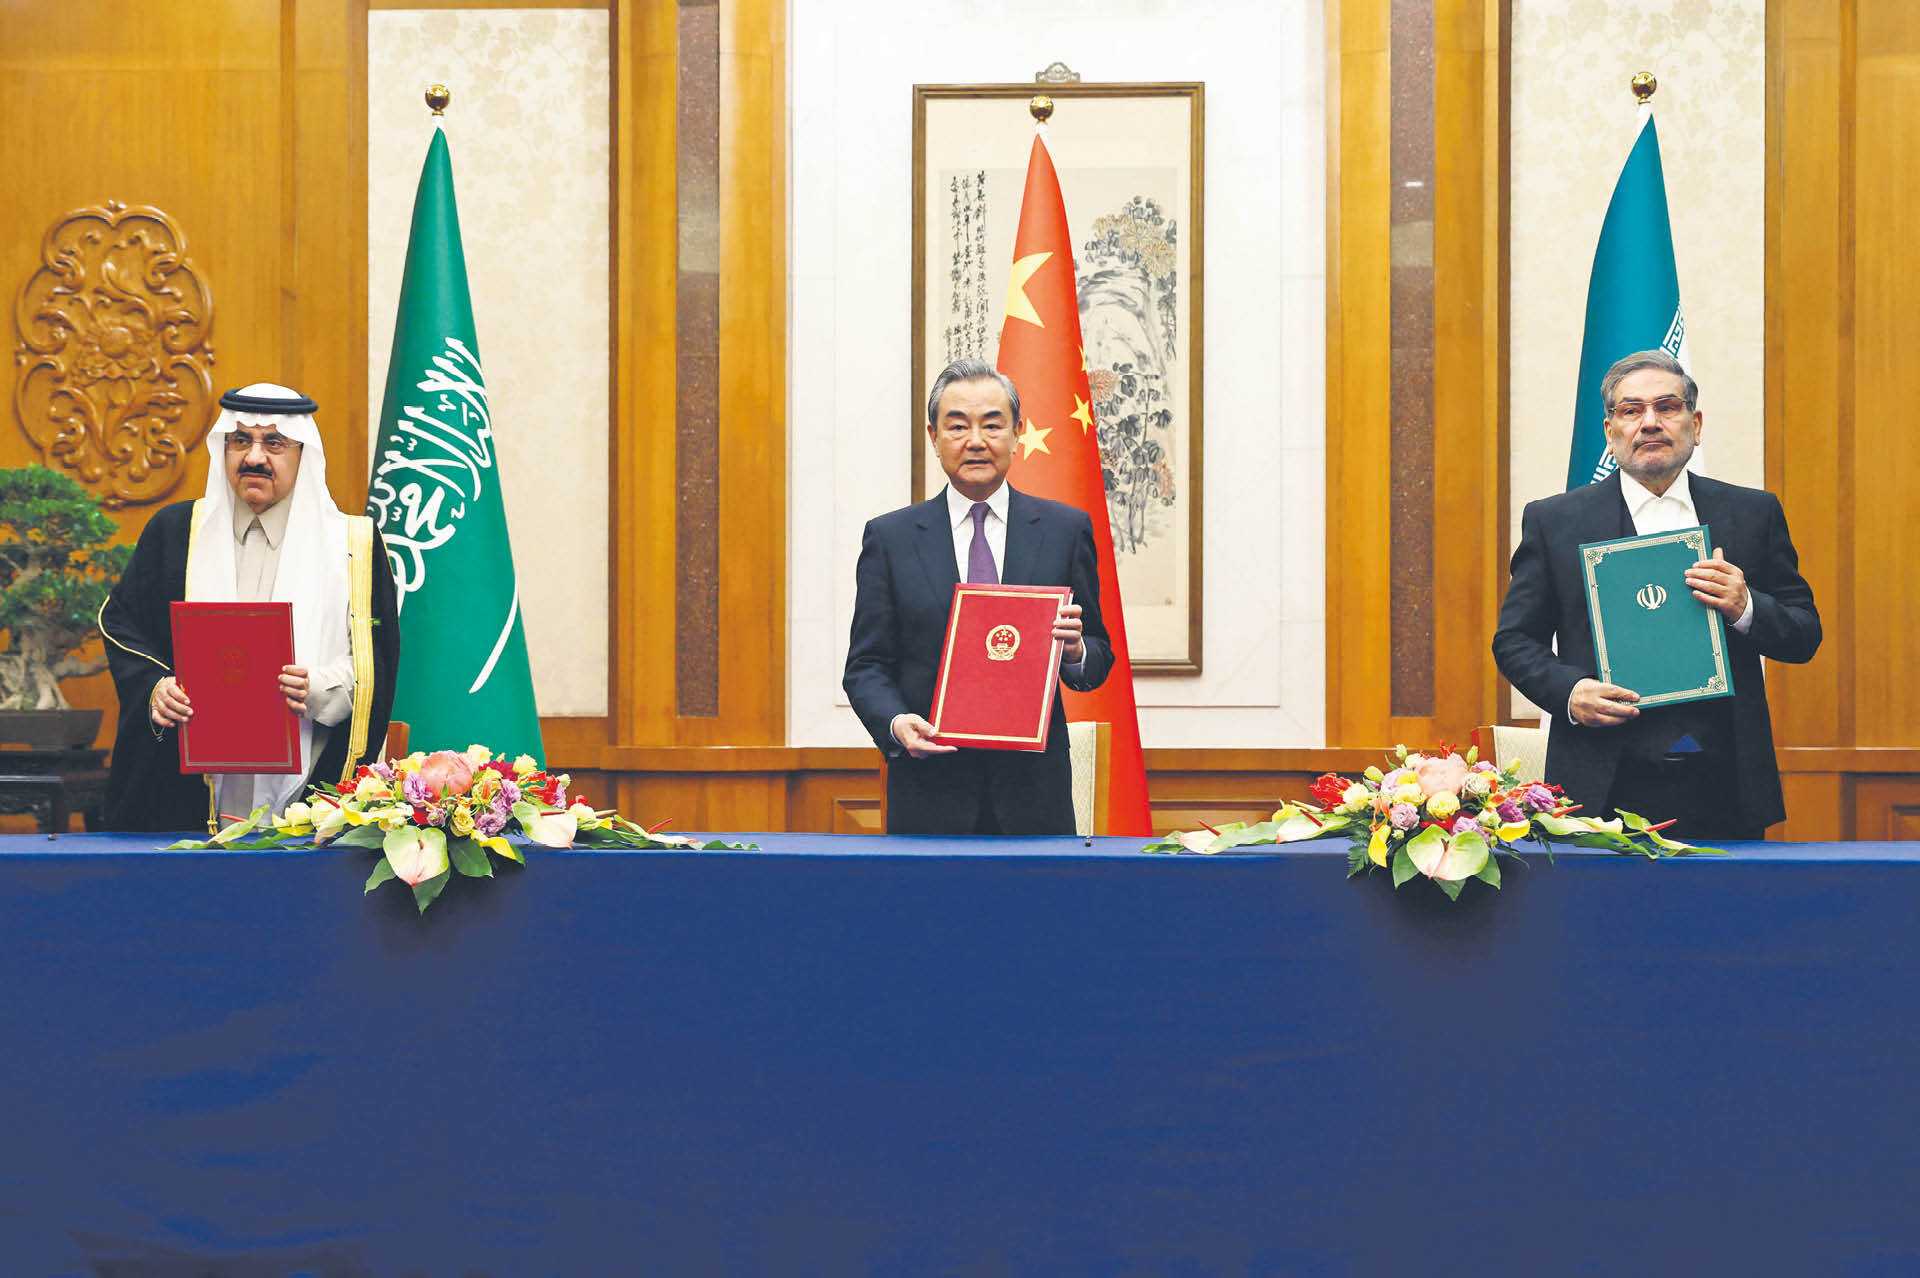 Podpisanie porozumienia między Iranem i Arabią Saudyjską, Pekin, 10 marca 2023 r.